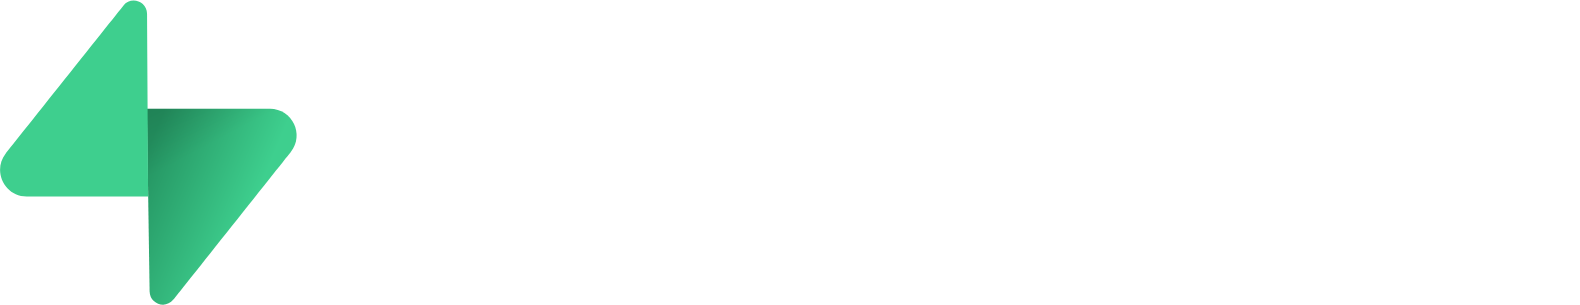 Supabase logo grand pour les fonds sombres (PNG transparent)